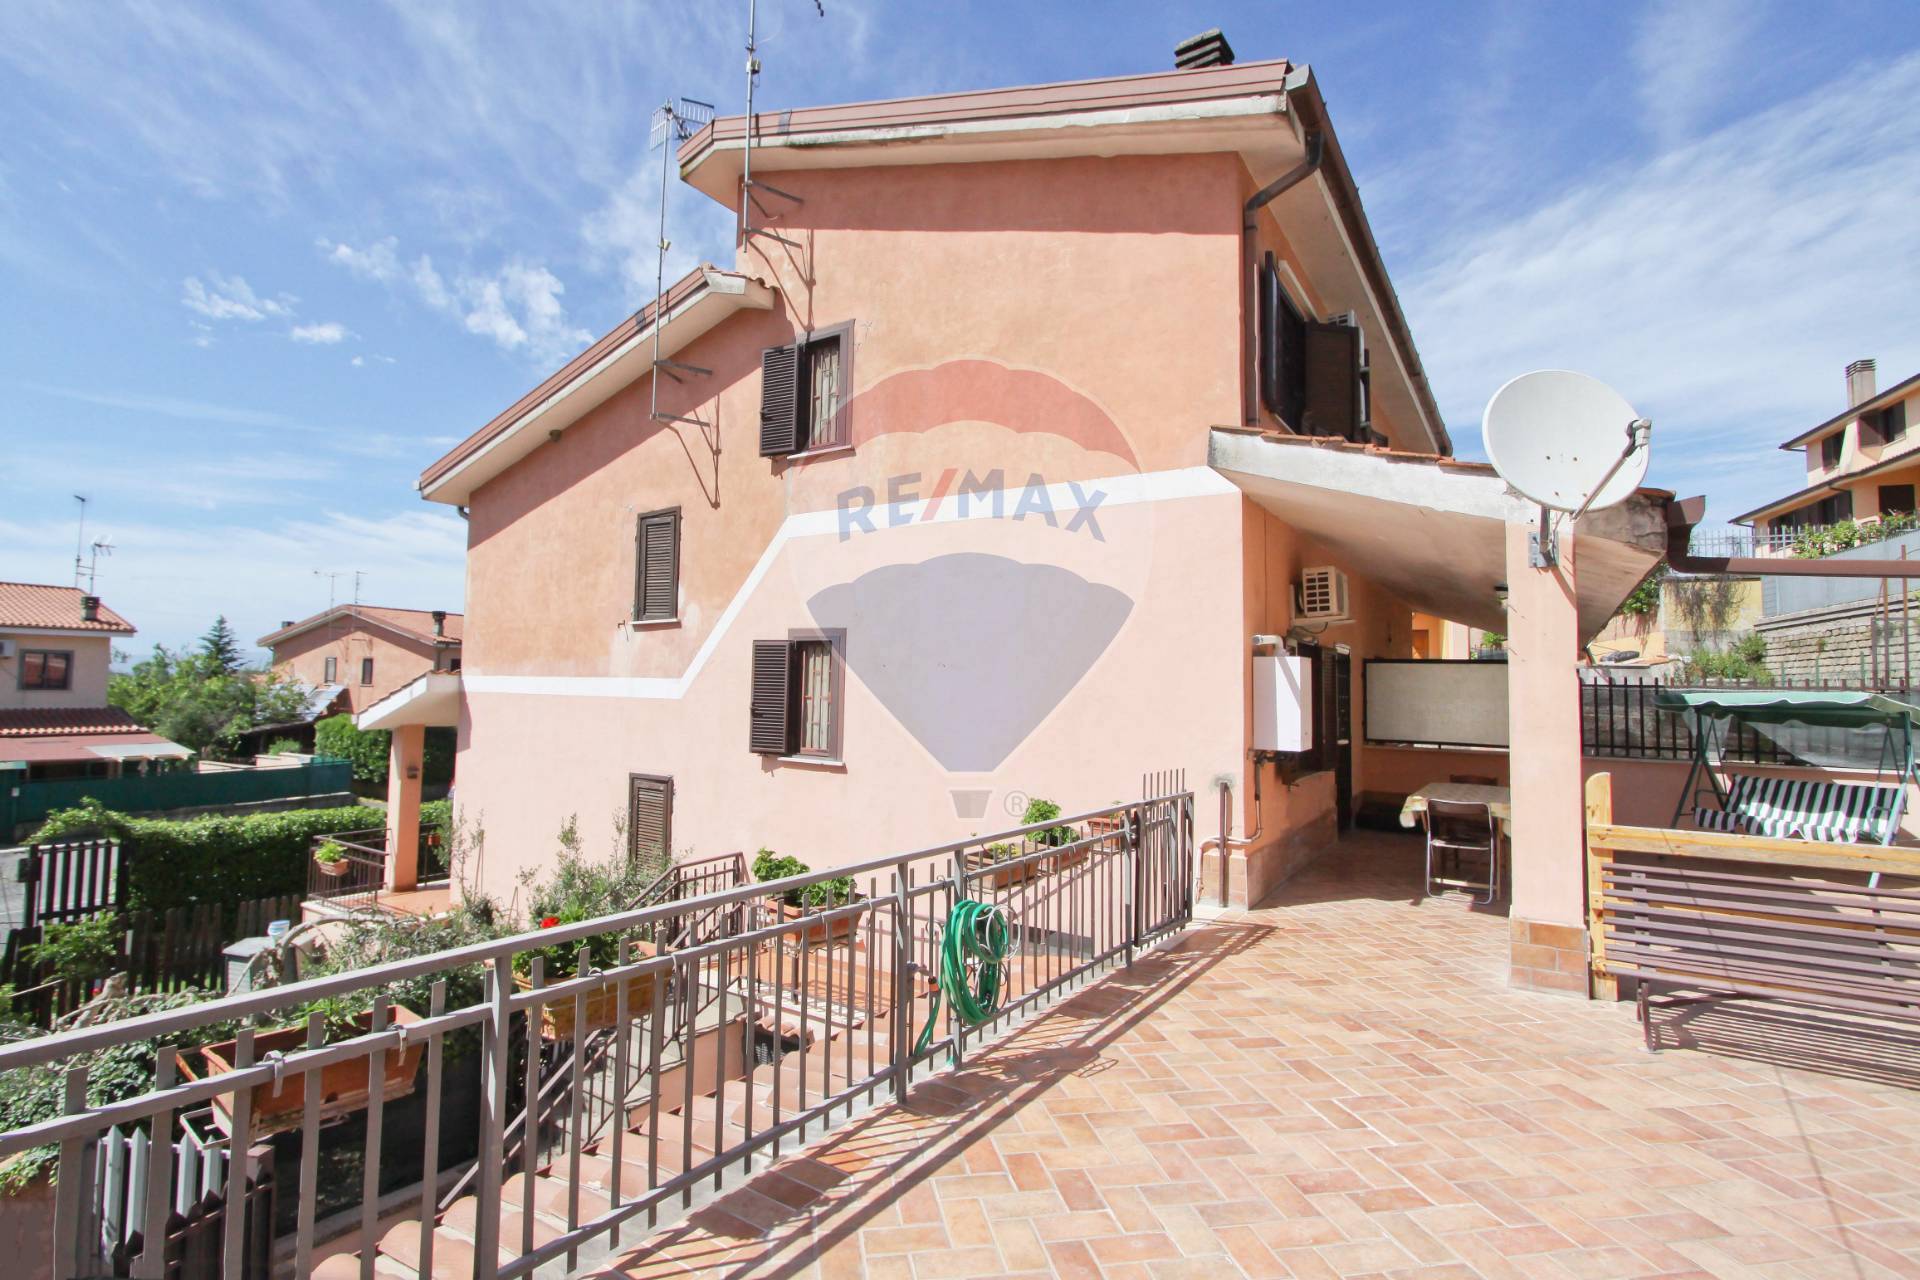 Villa a Schiera in vendita a Magliano Romano, 6 locali, prezzo € 129.000 | CambioCasa.it